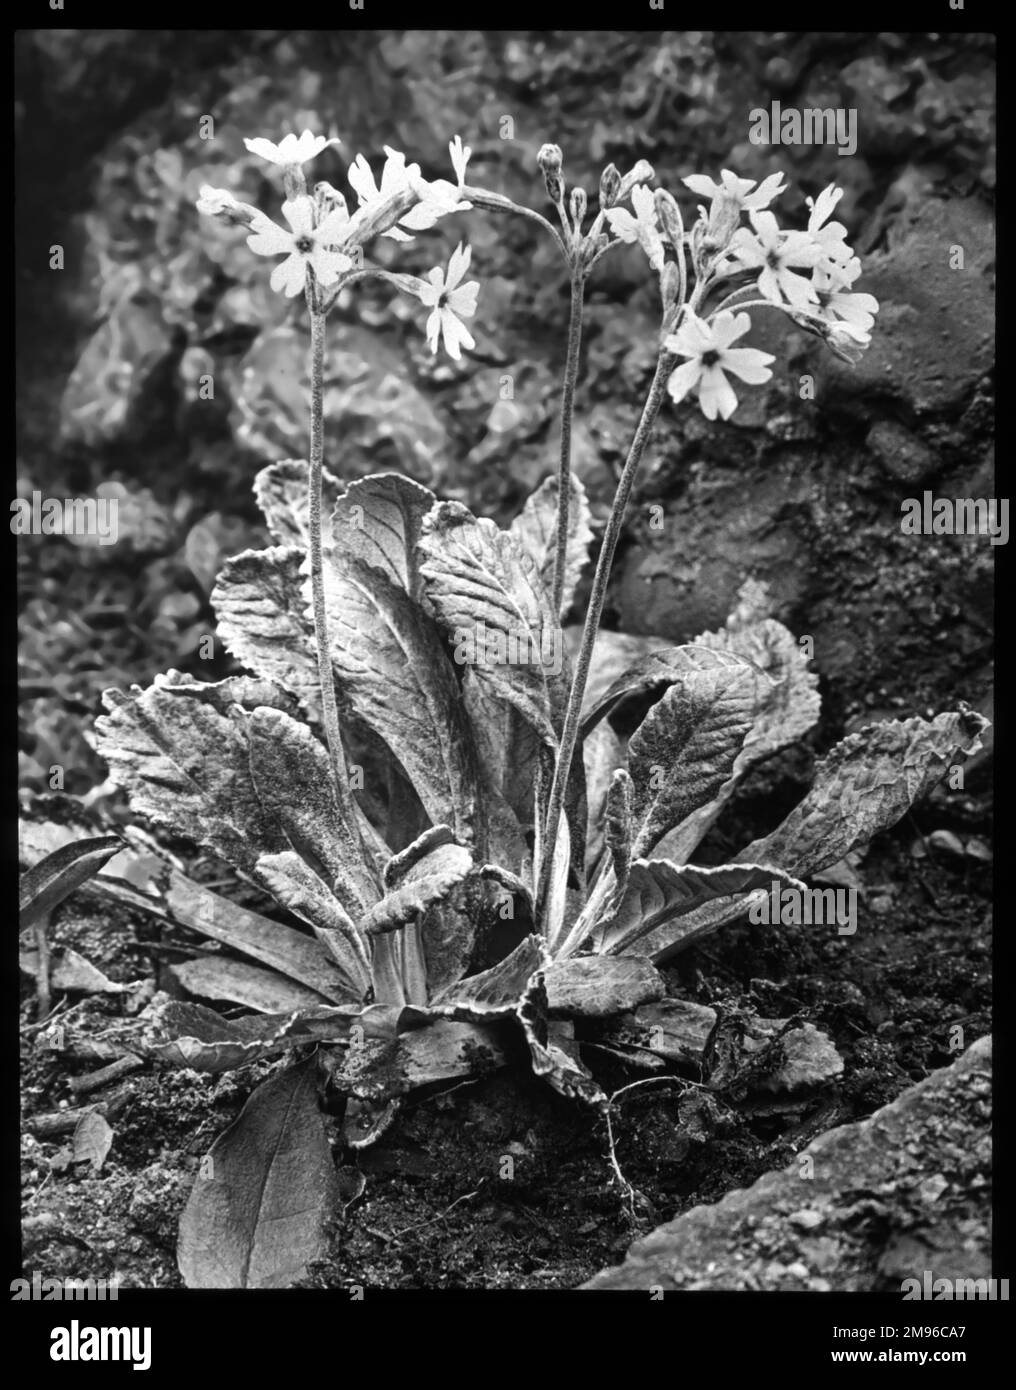 Primula frondosa (Primrose à feuilles), une plante herbacée vivace de la famille des Primulacées. Il a des fleurs mauves-roses avec des centres jaunes. Le nom latin primula fait référence aux fleurs qui sont parmi les premières à s'ouvrir au printemps. Banque D'Images